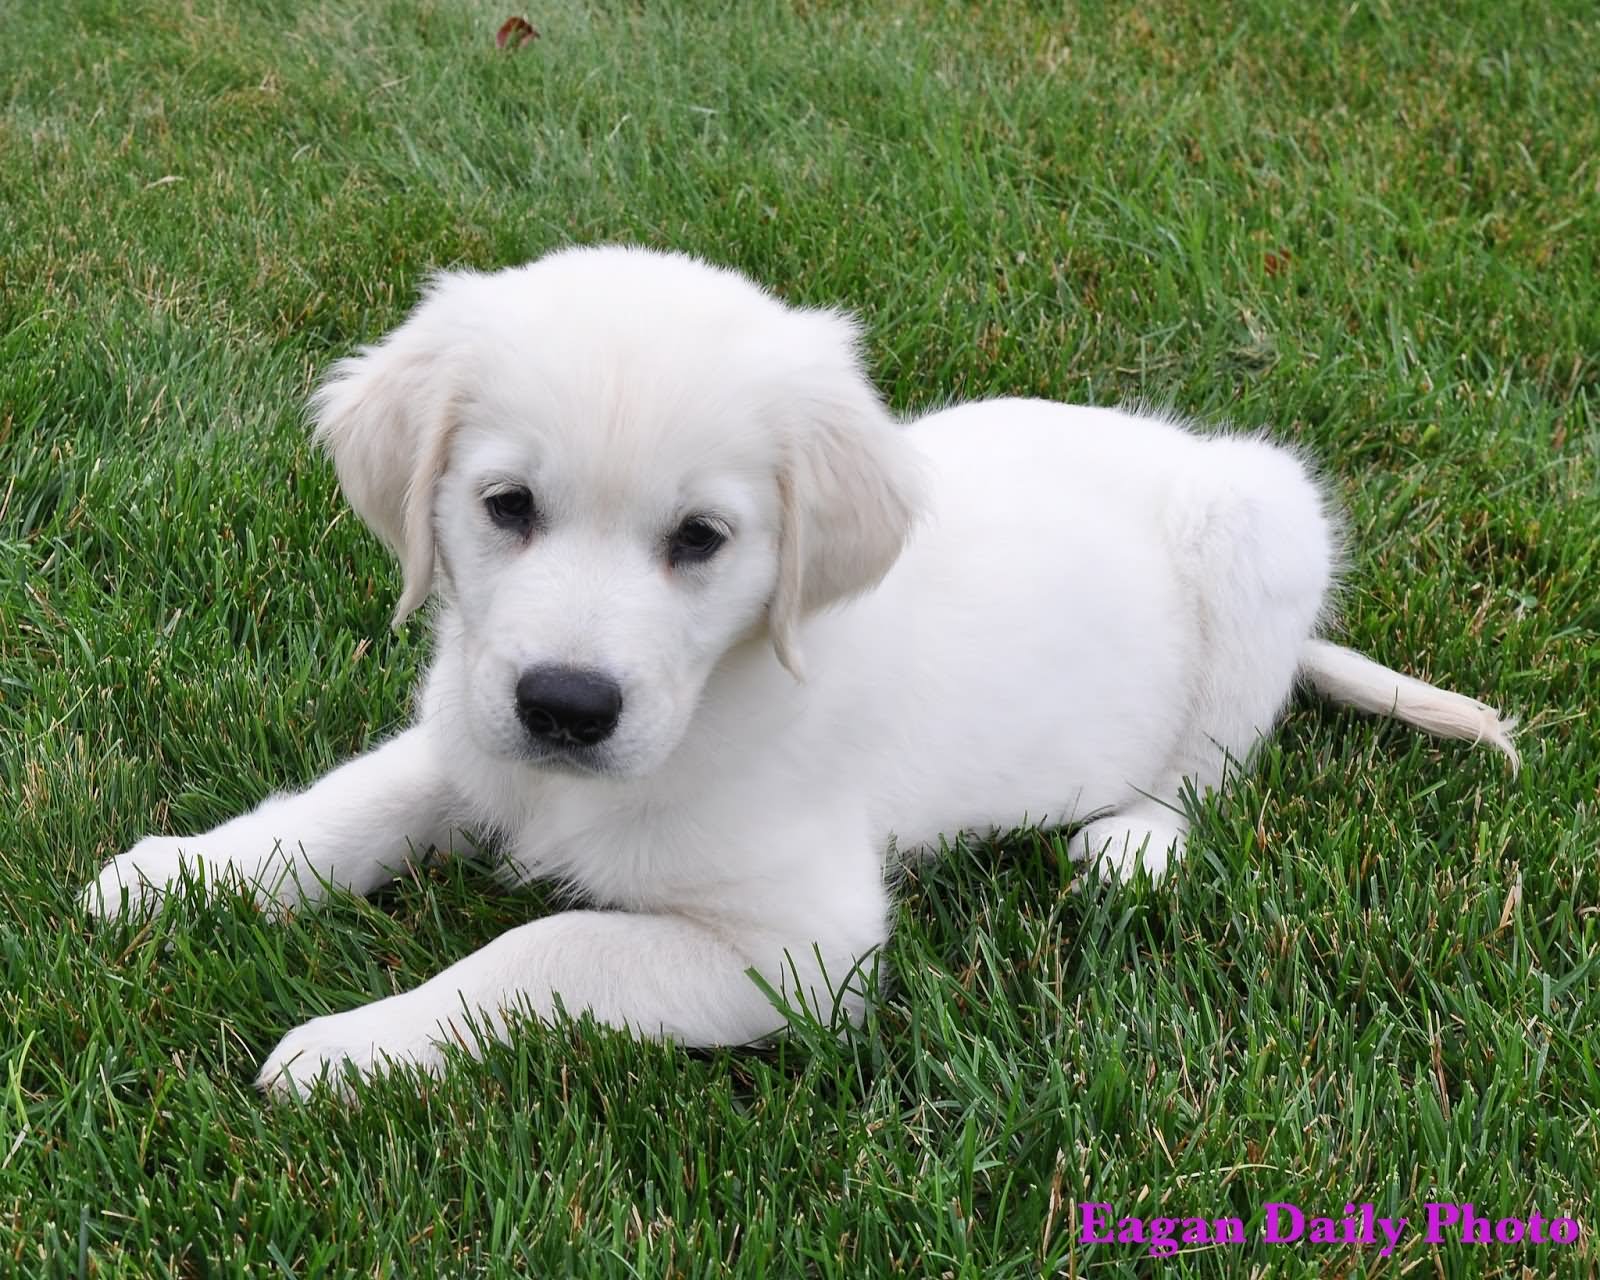 Cute White Golden Retriever Puppy Sitting On Grass